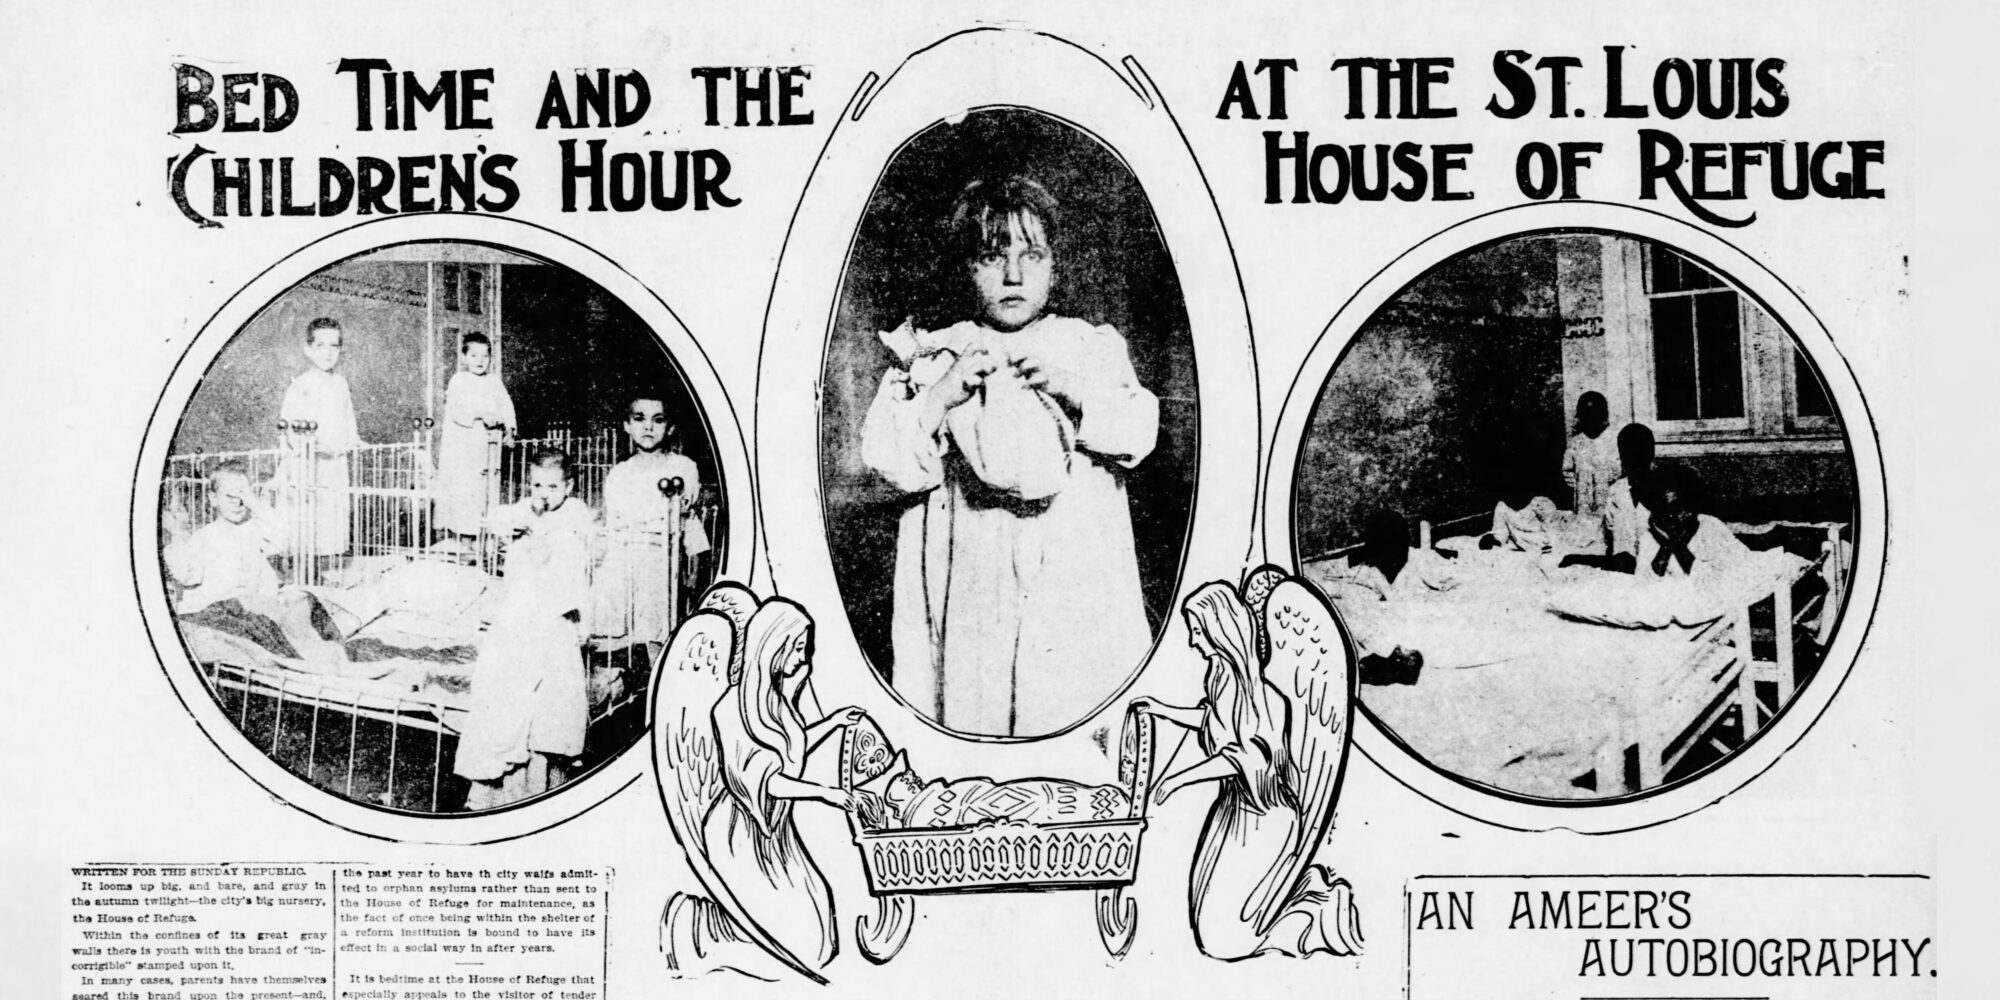 Recorte de la edición del 3 de noviembre de 1901 del St. Louis Republic titulado "La hora de dormir y la hora de los niños en St. Louis House of Refuge". La imagen contiene viñetas de niños en camisón en la cama y un dibujo de dos ángeles meciendo un moisés.